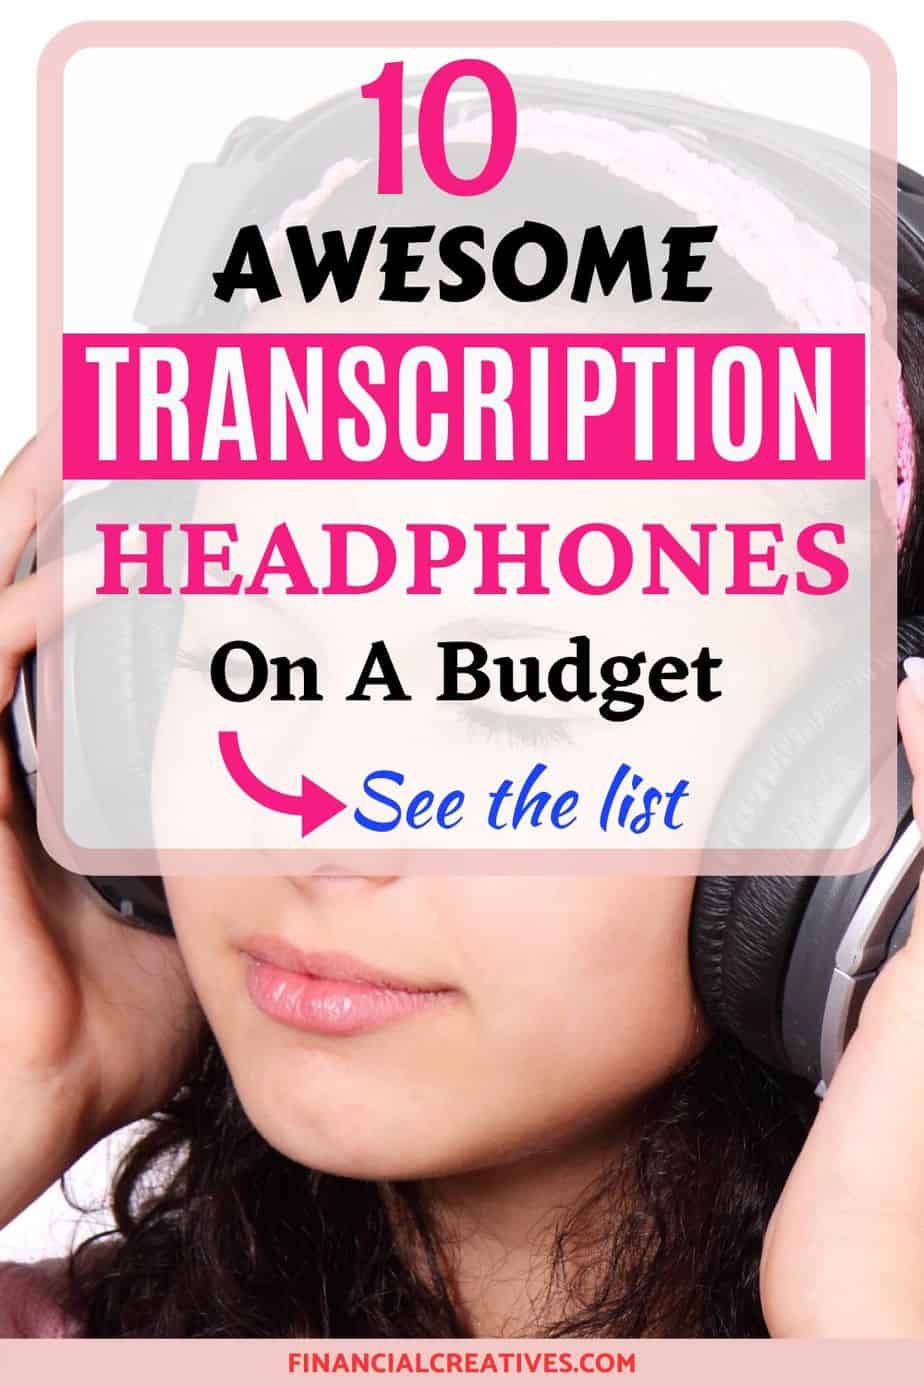 Best Transcription Headphones: Noise Cancelling Headphones for Transcription